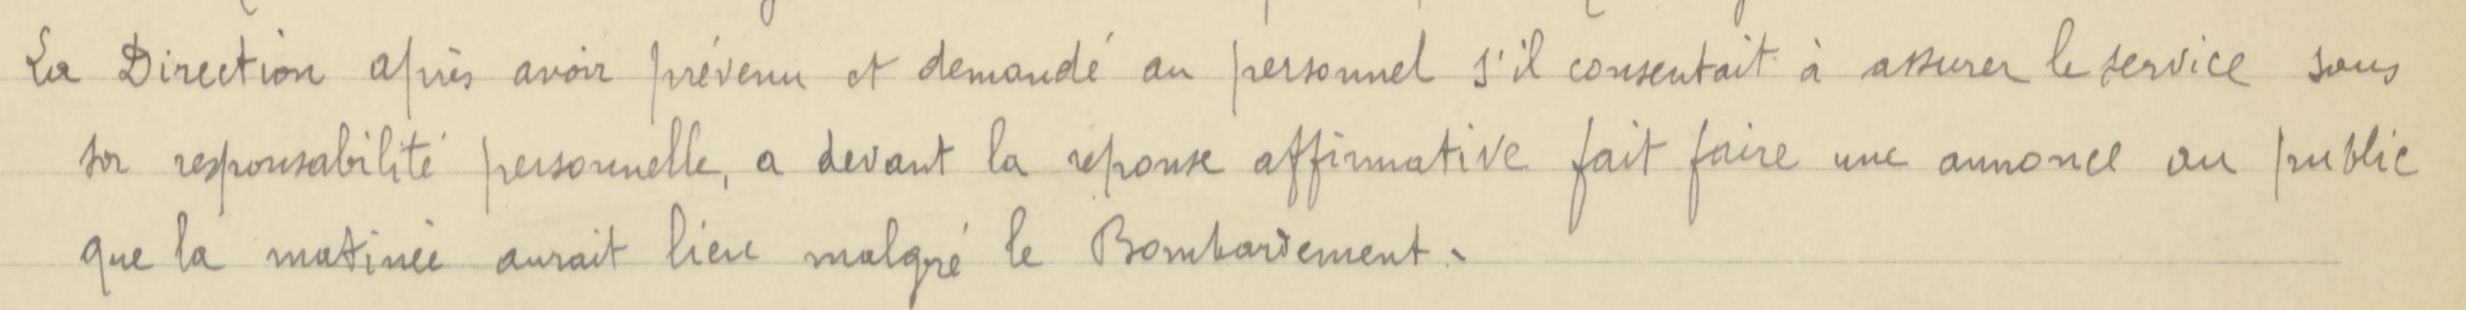 Extrait du journal de régie de l'Opéra - 01/04/1918